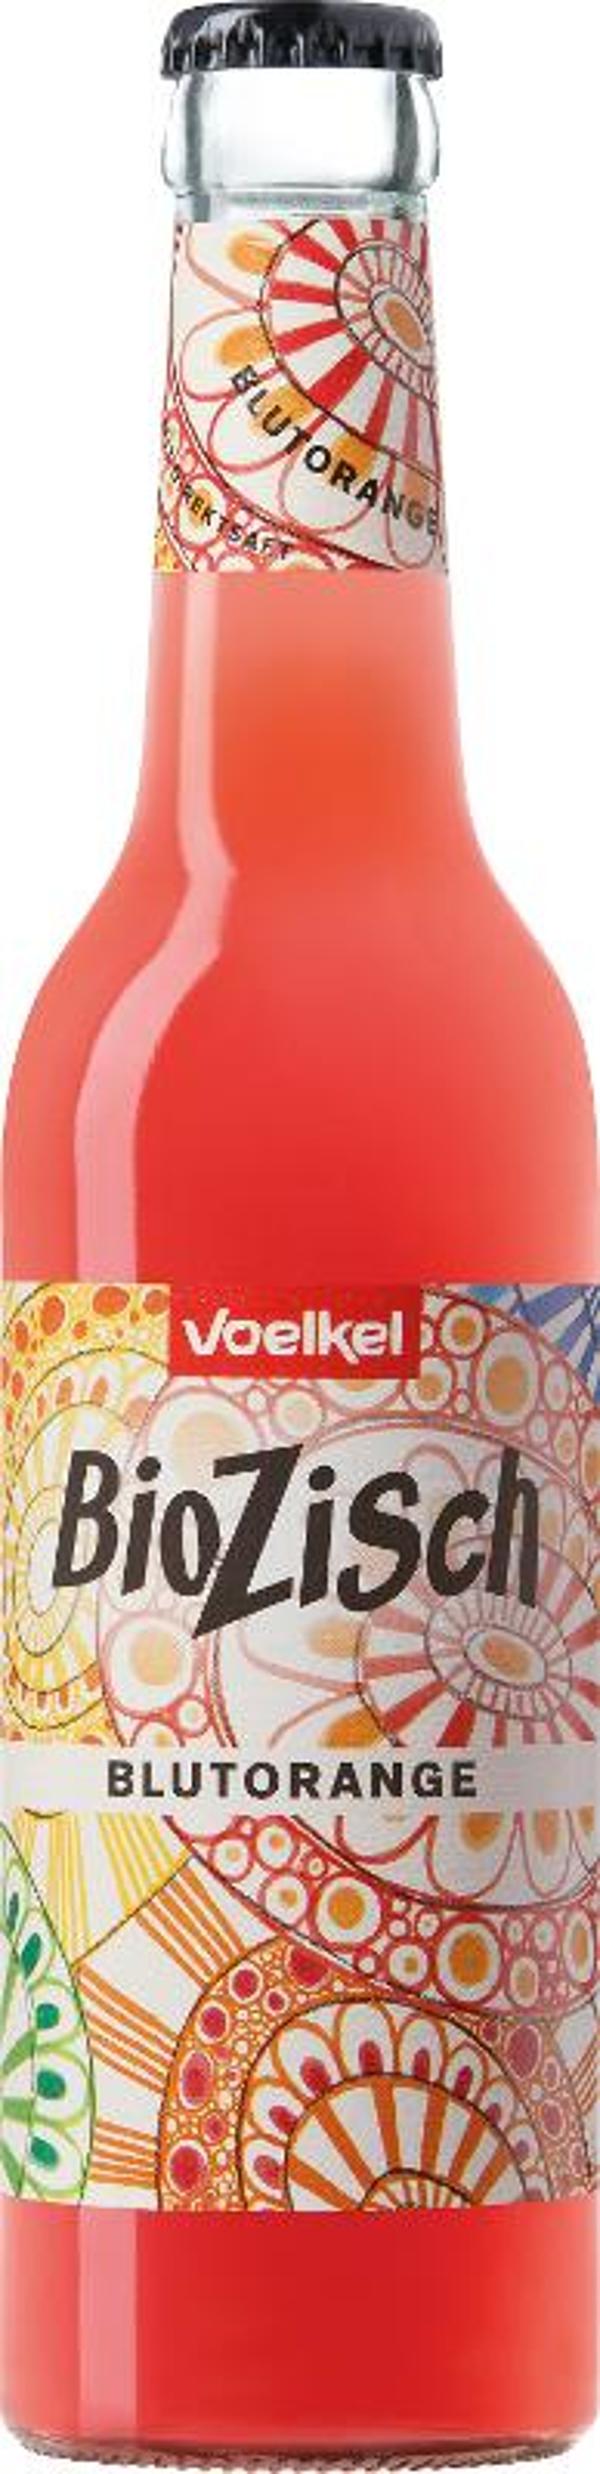 Produktfoto zu VPE BioZisch Blutorange 12x0,33 l Voelkel